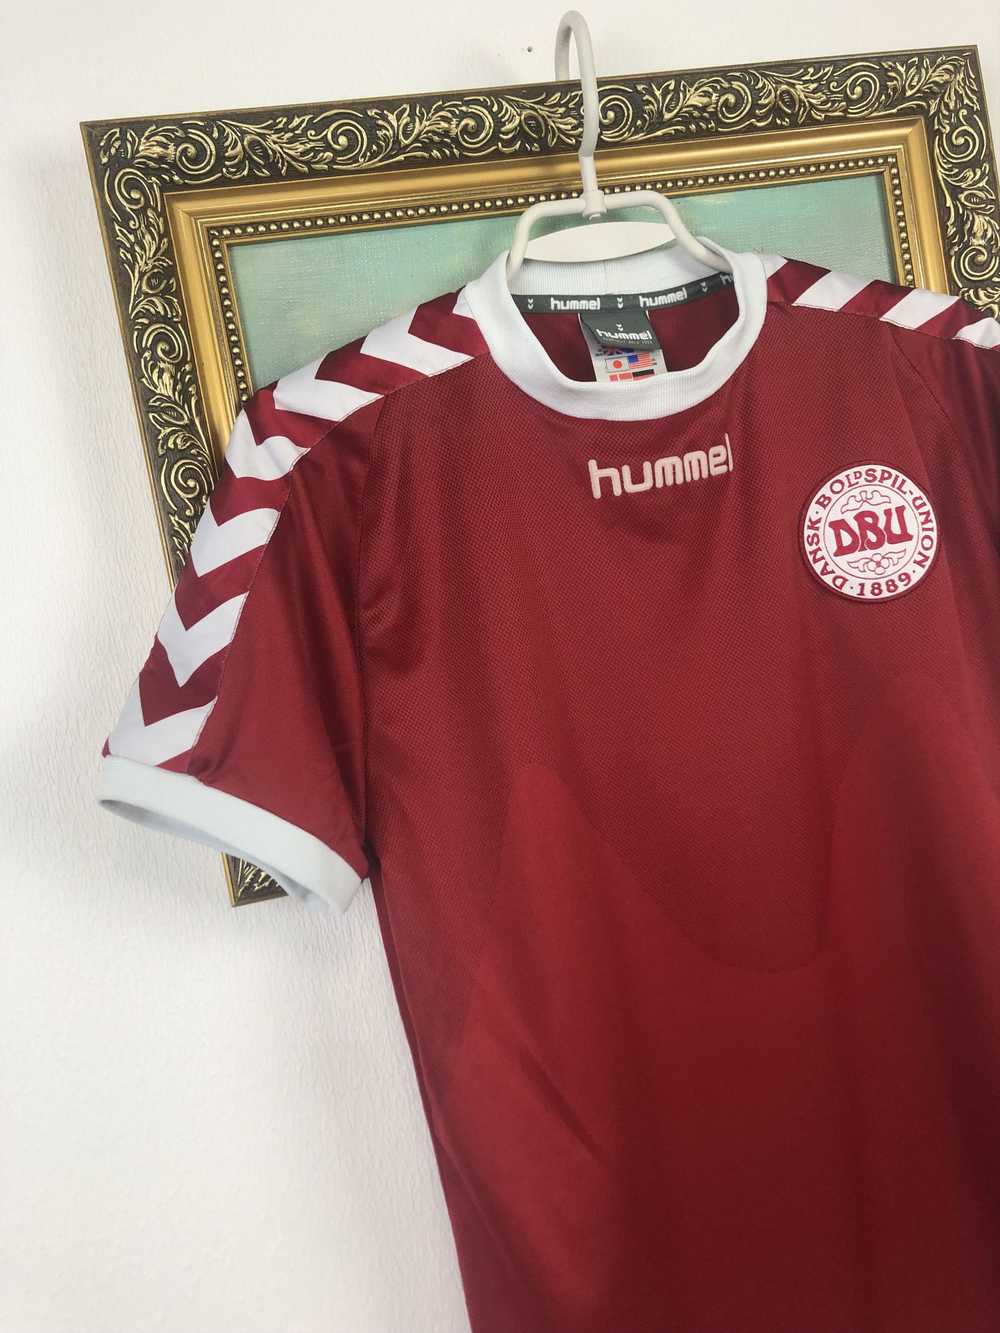 Soccer Jersey × Sportswear × Vintage Denmark Home… - image 3